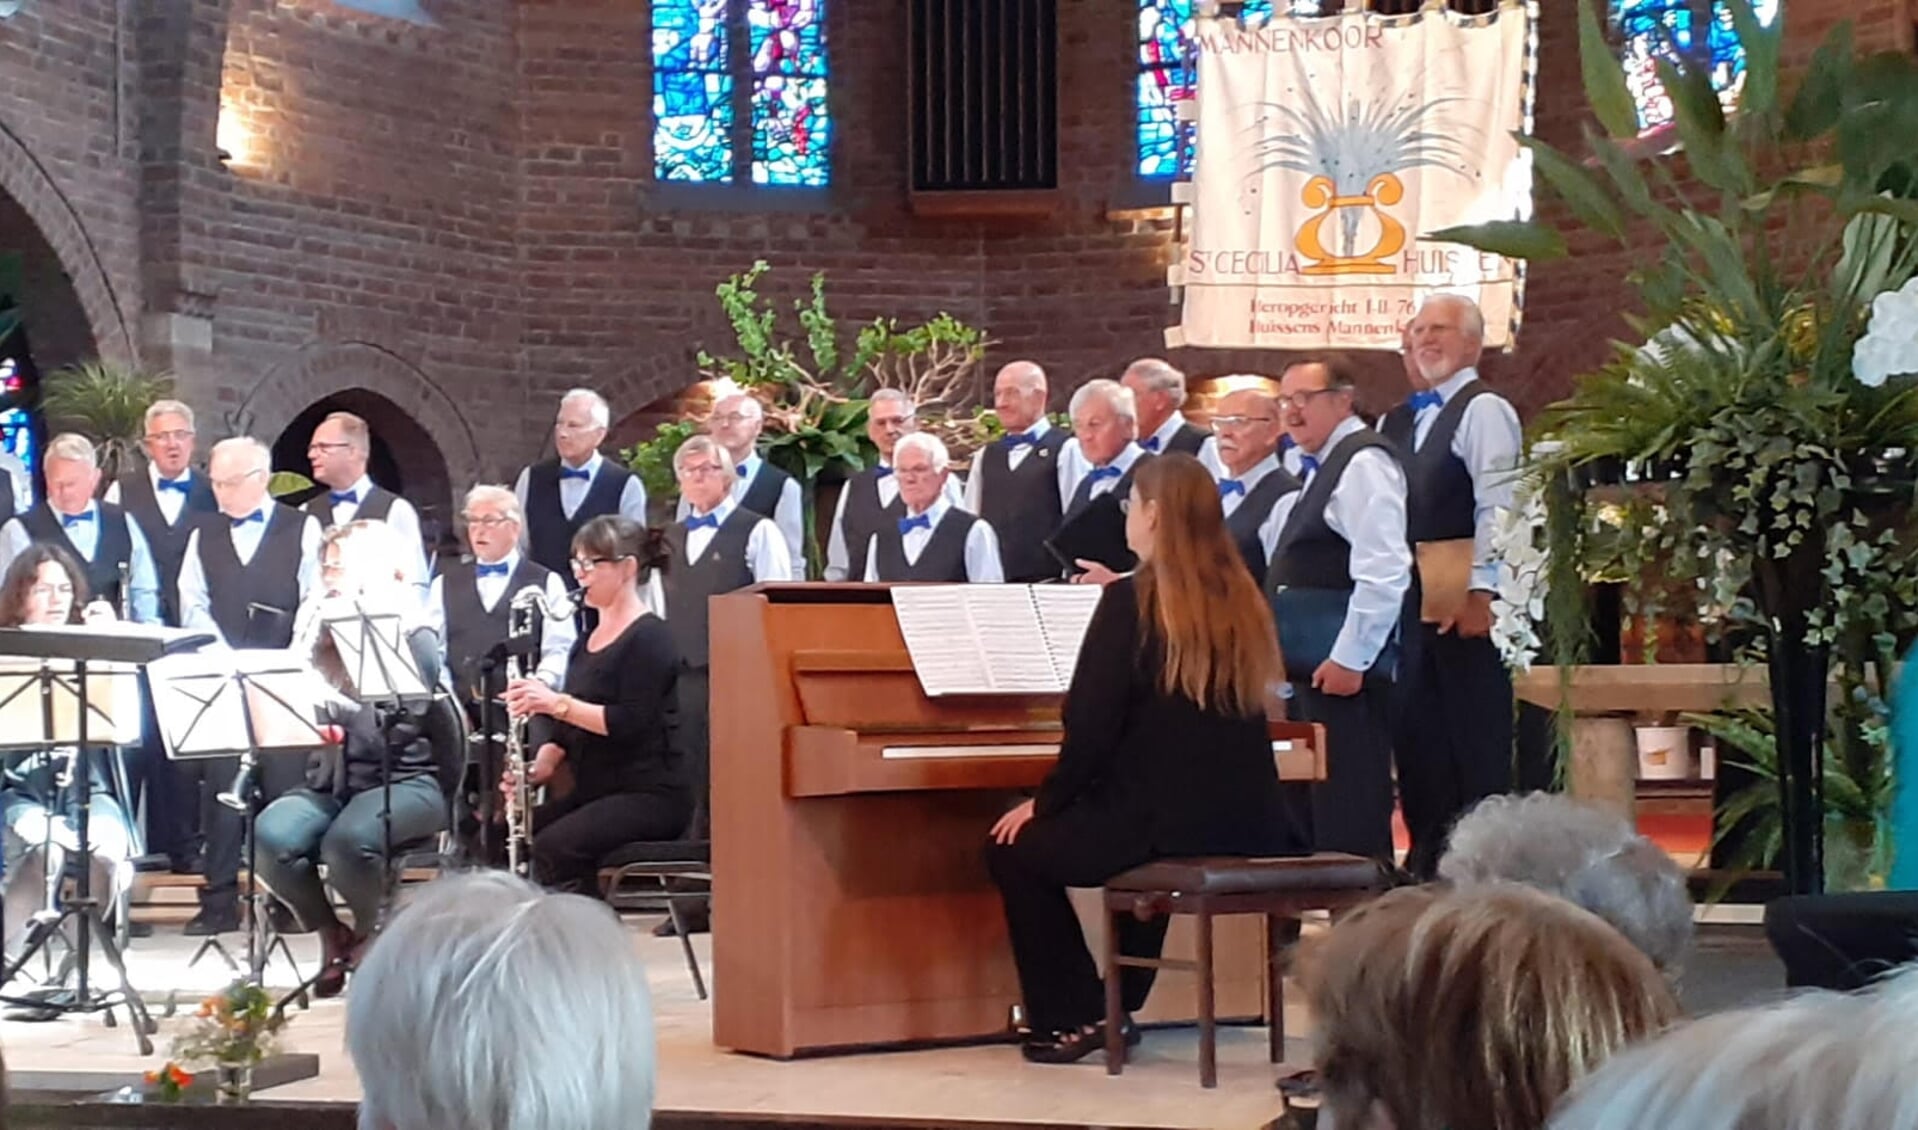 Concert Lingewaards Mannenkoor in Zandse kerk. 